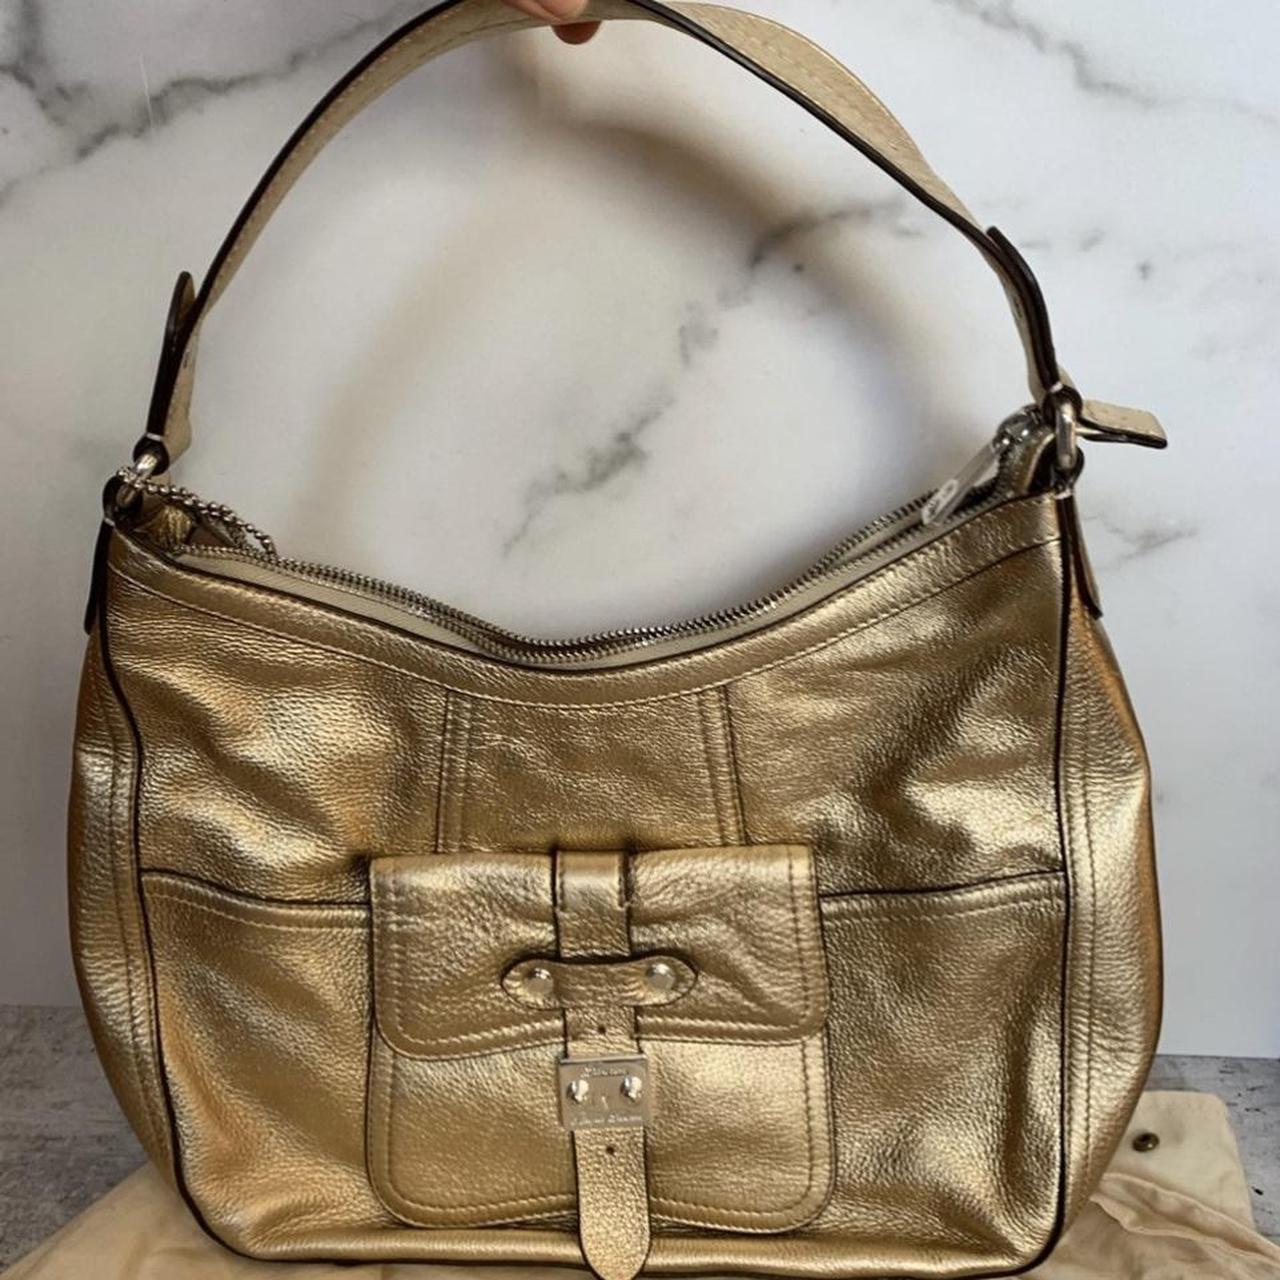 Ralph Lauren bag. vintage gold silver metallic - Depop